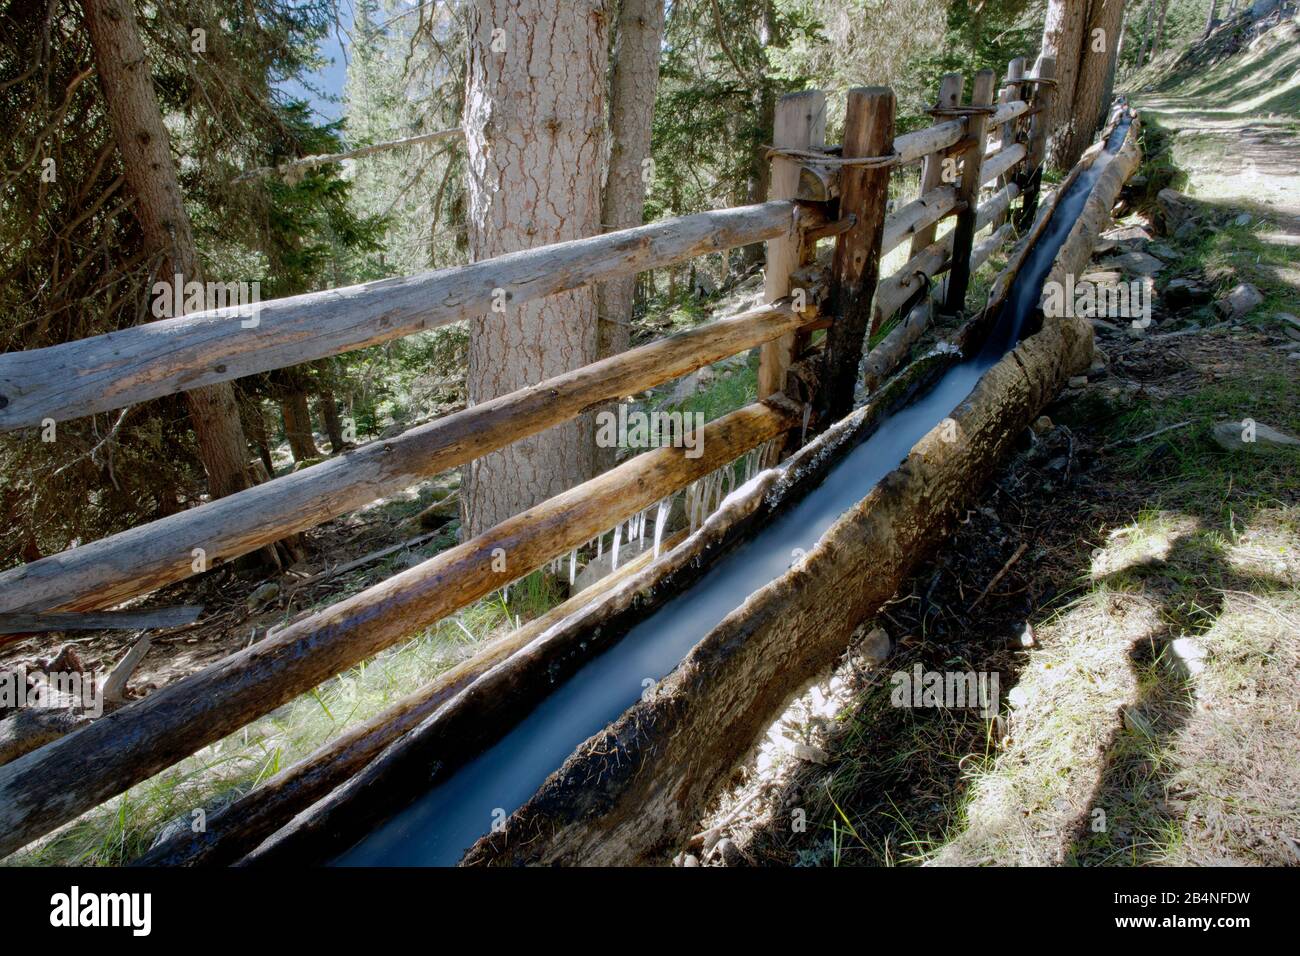 Wasserleitungen, "Koundl", versorgen die abgelegenen Berghöfe mit Süßwasser. Martelltal, Südtirol. Stockfoto